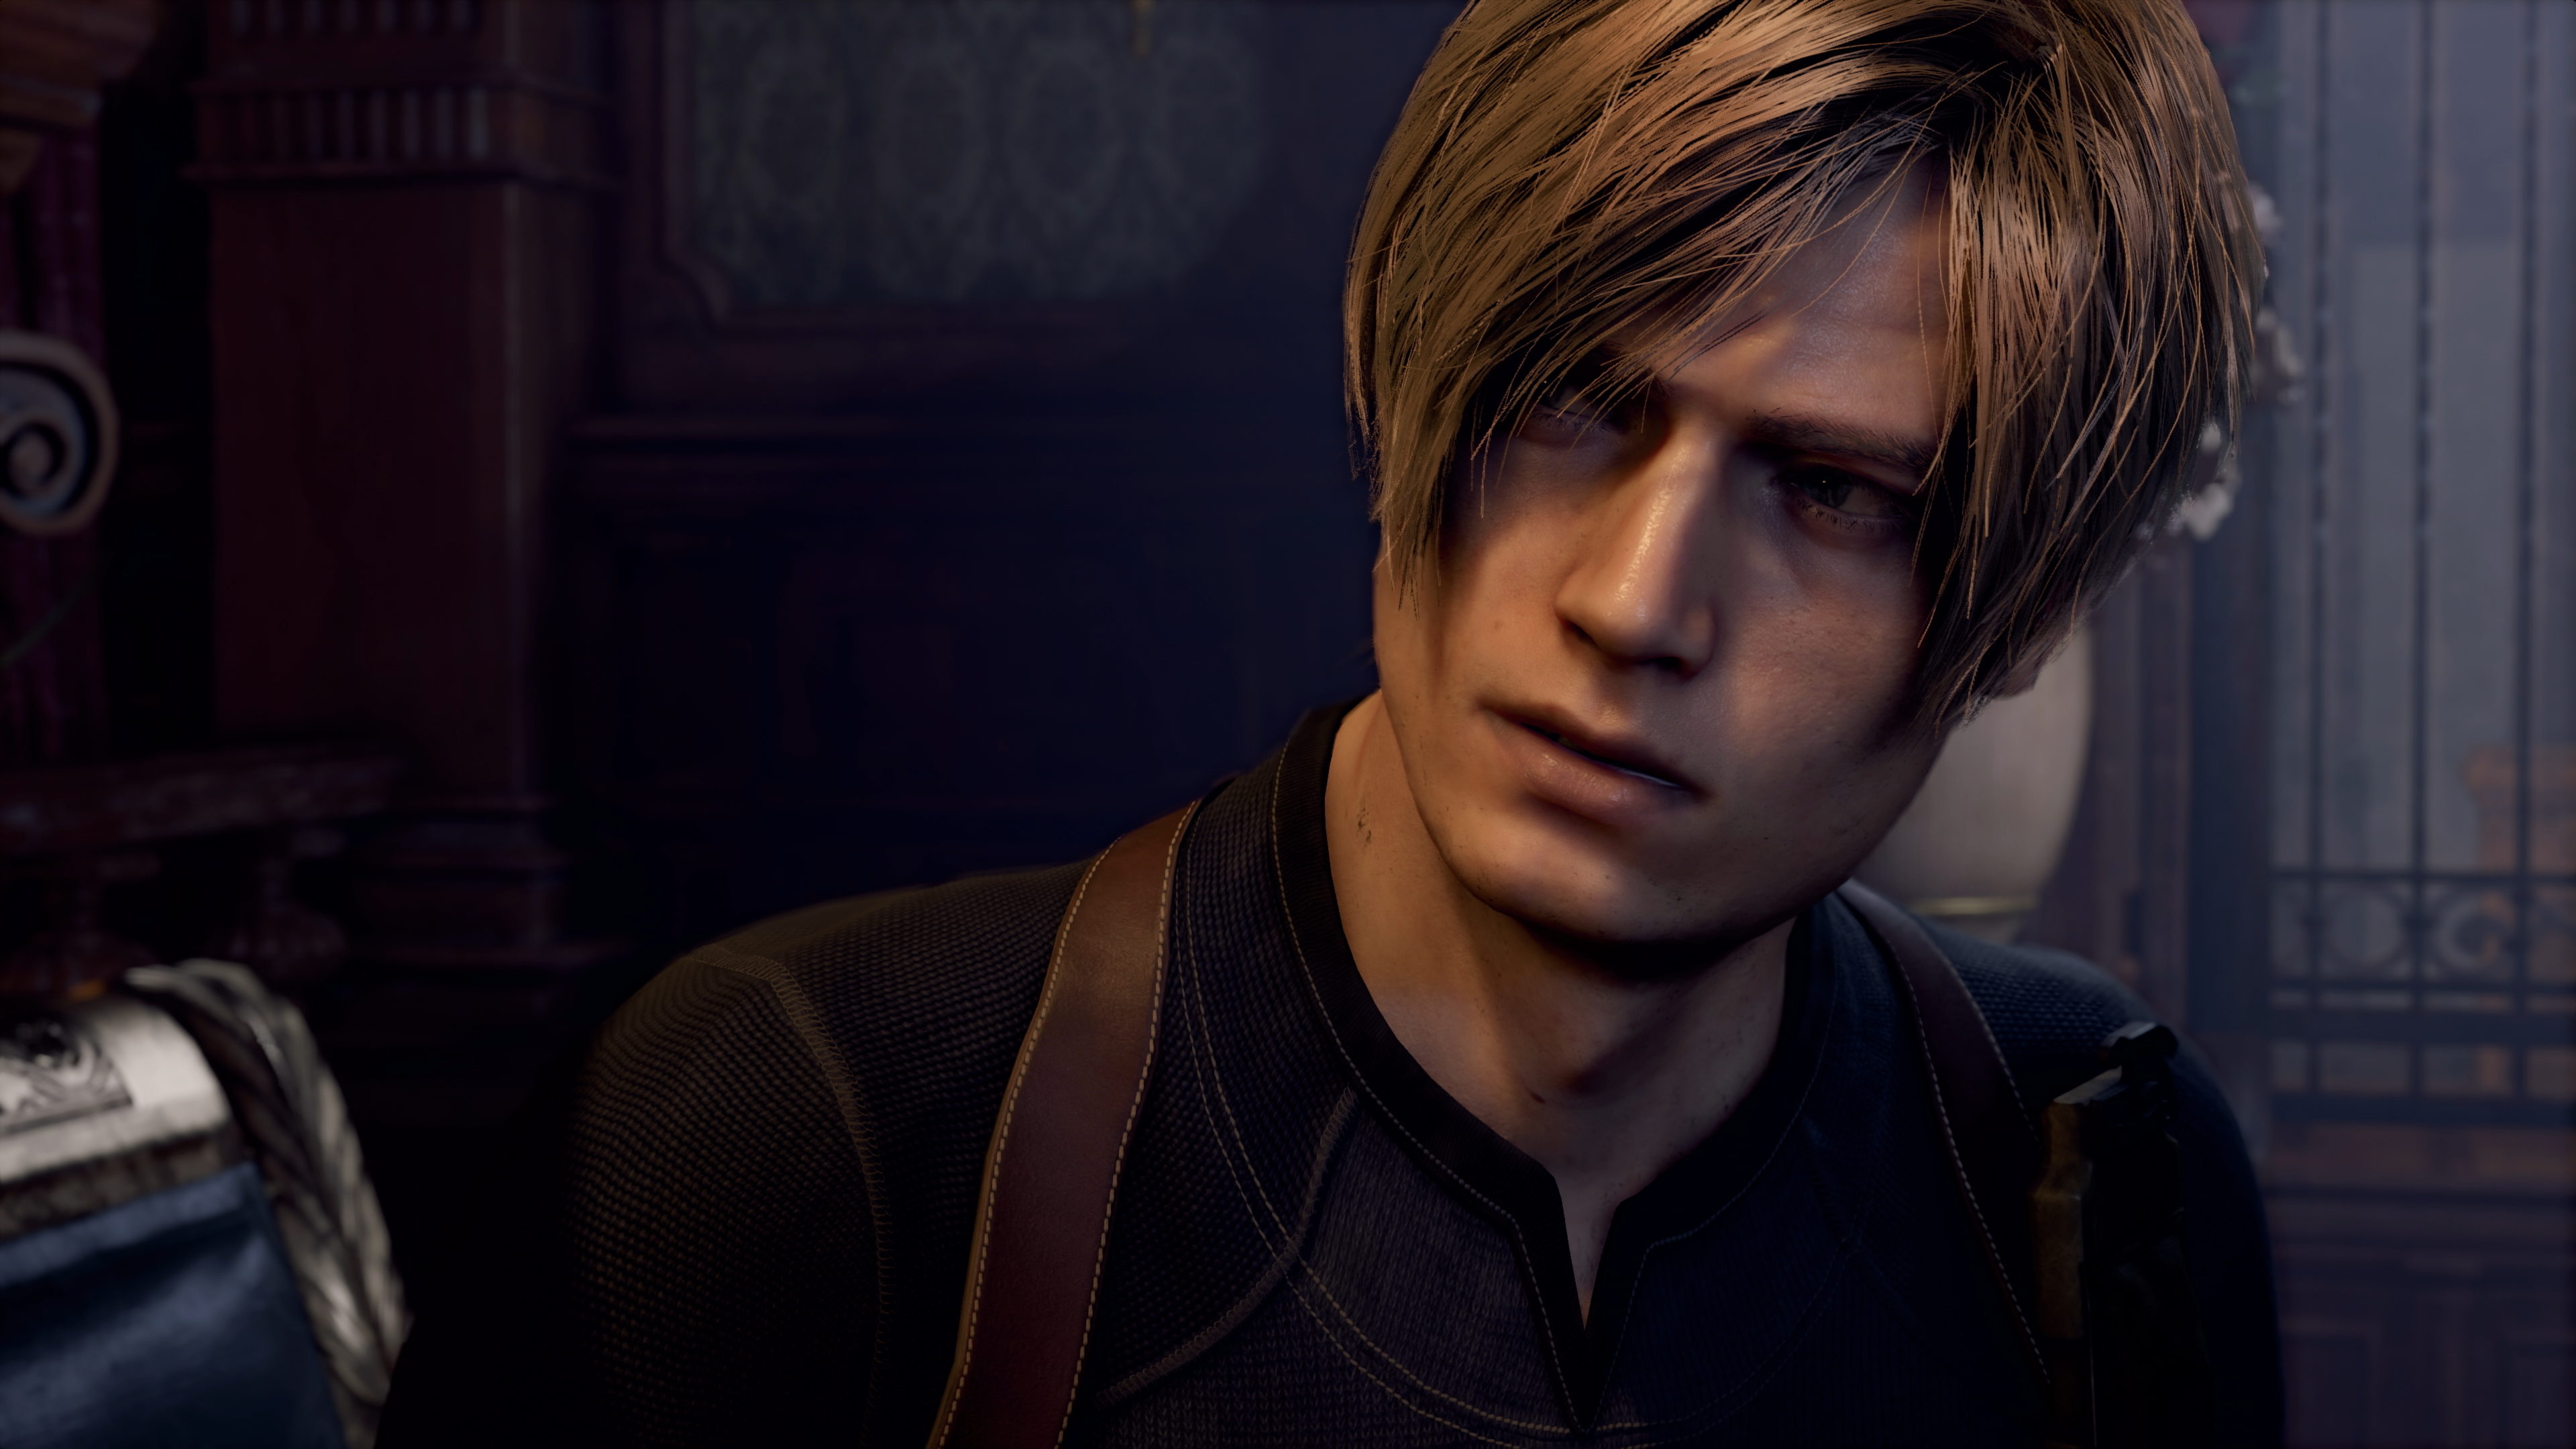  Resident Evil 4 - Xbox Series X : Capcom U S A Inc: Everything  Else